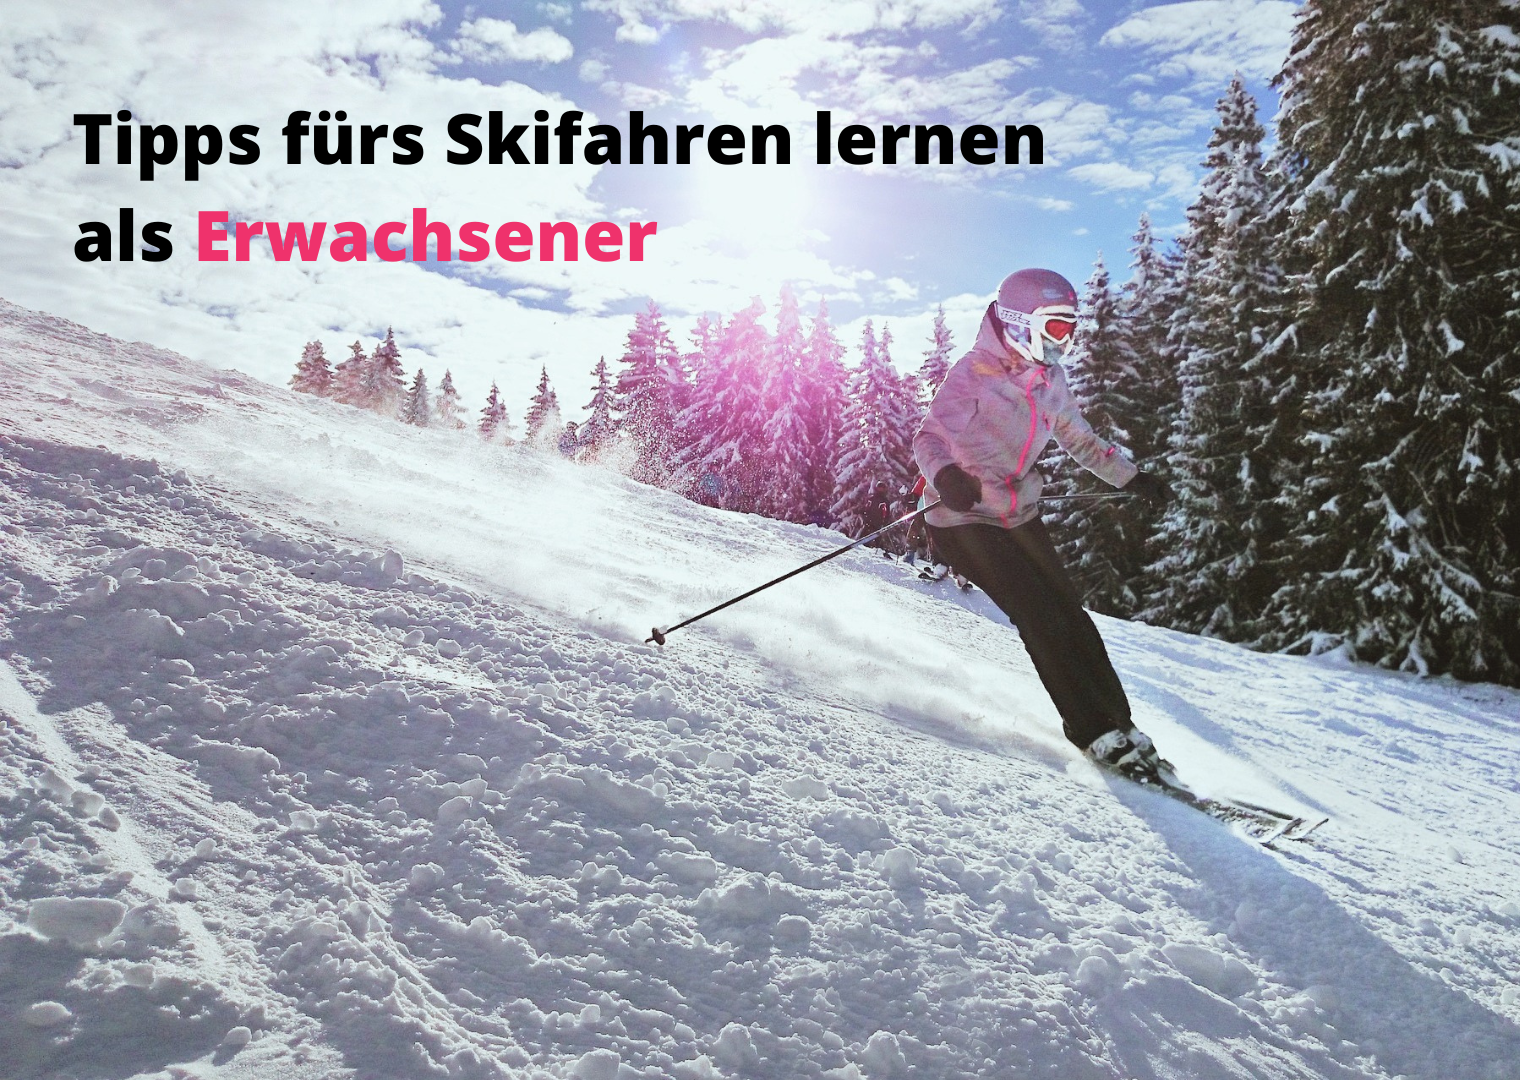 https://www.xspo.de/media/image/53/51/0c/Skifahren-lernen-als-Erwachsener.png